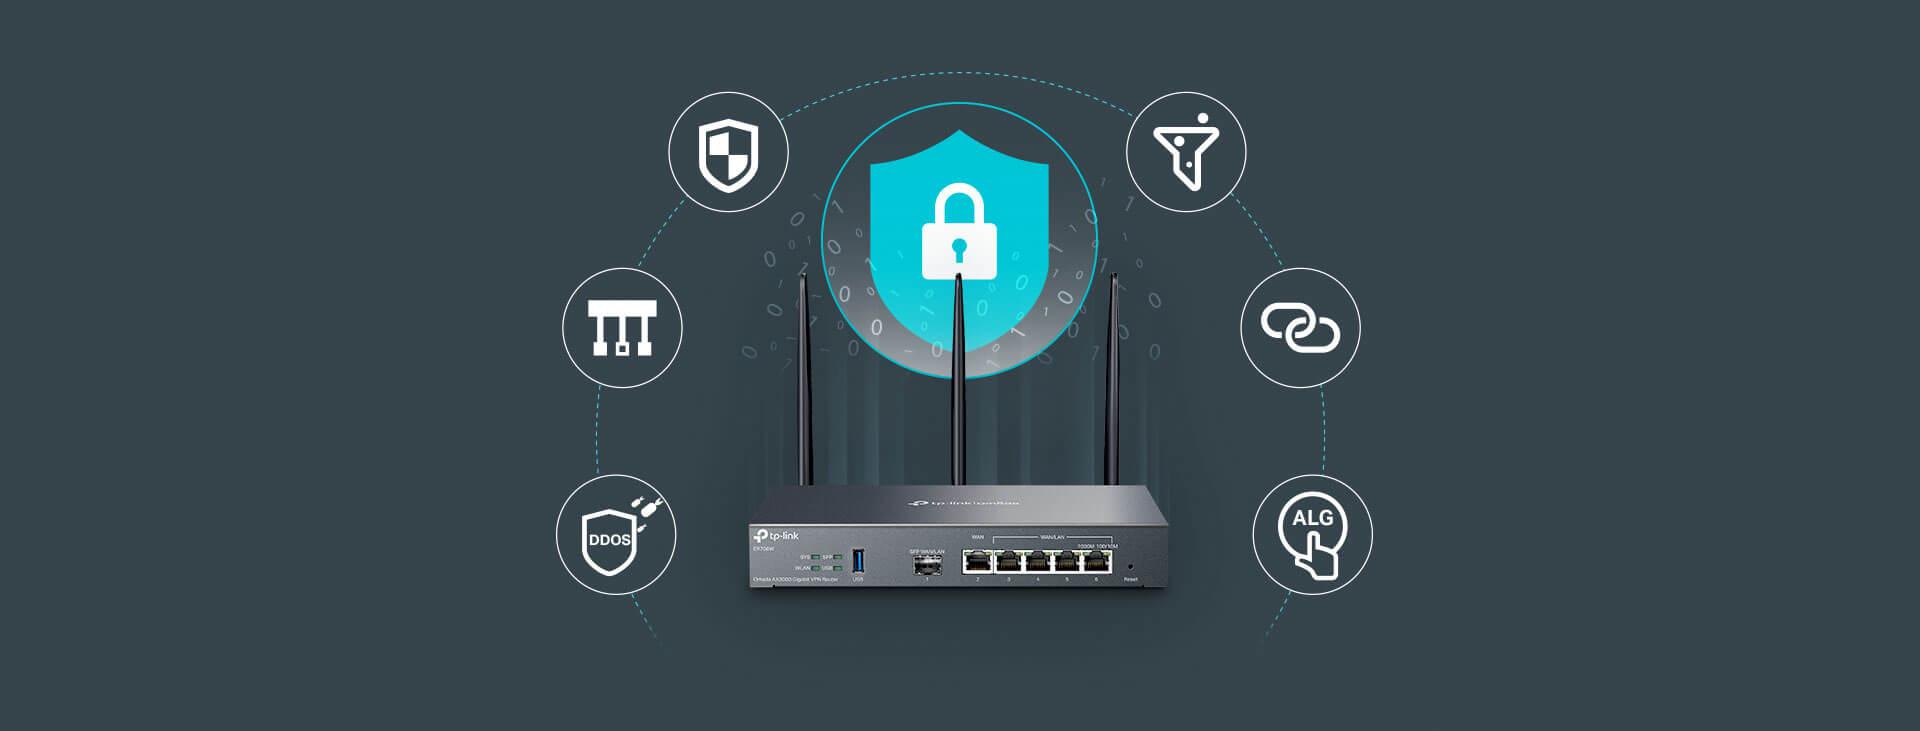 Router VPN Omada TP-Link ER706W - komplet zaawansowanych zabezpieczeń i wygoda użytkowania